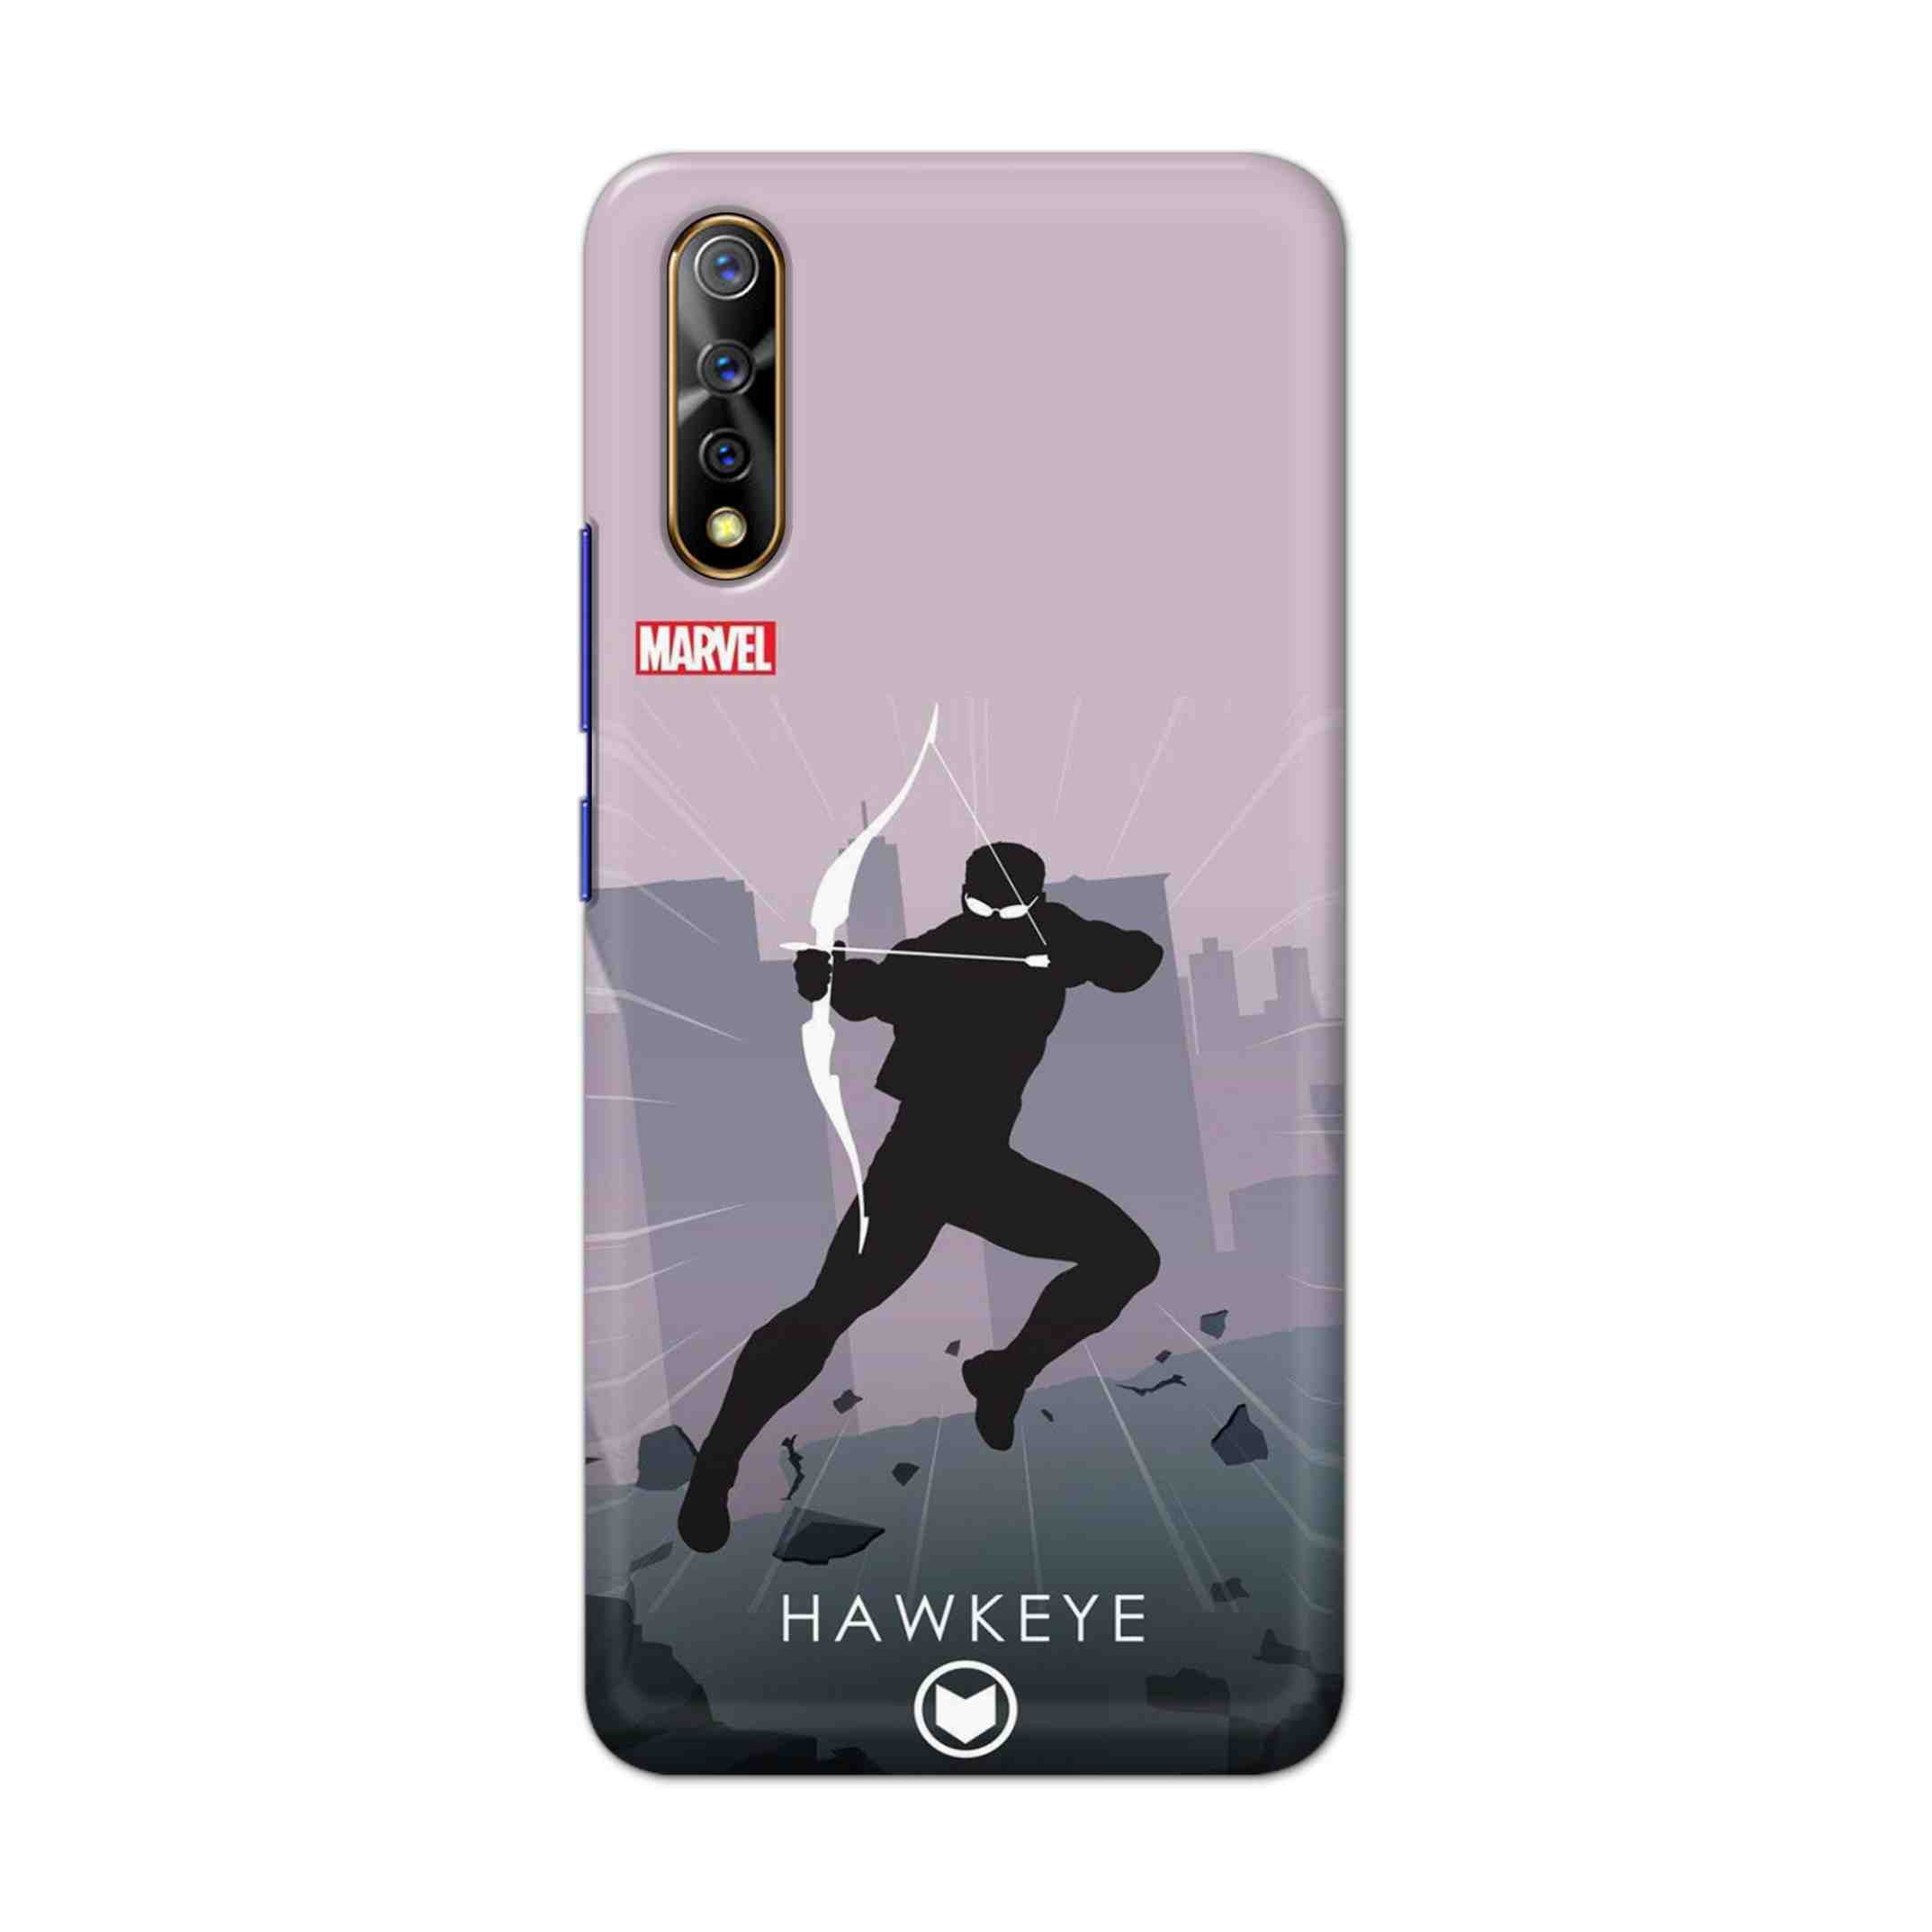 Buy Hawkeye Hard Back Mobile Phone Case Cover For Vivo S1 / Z1x Online